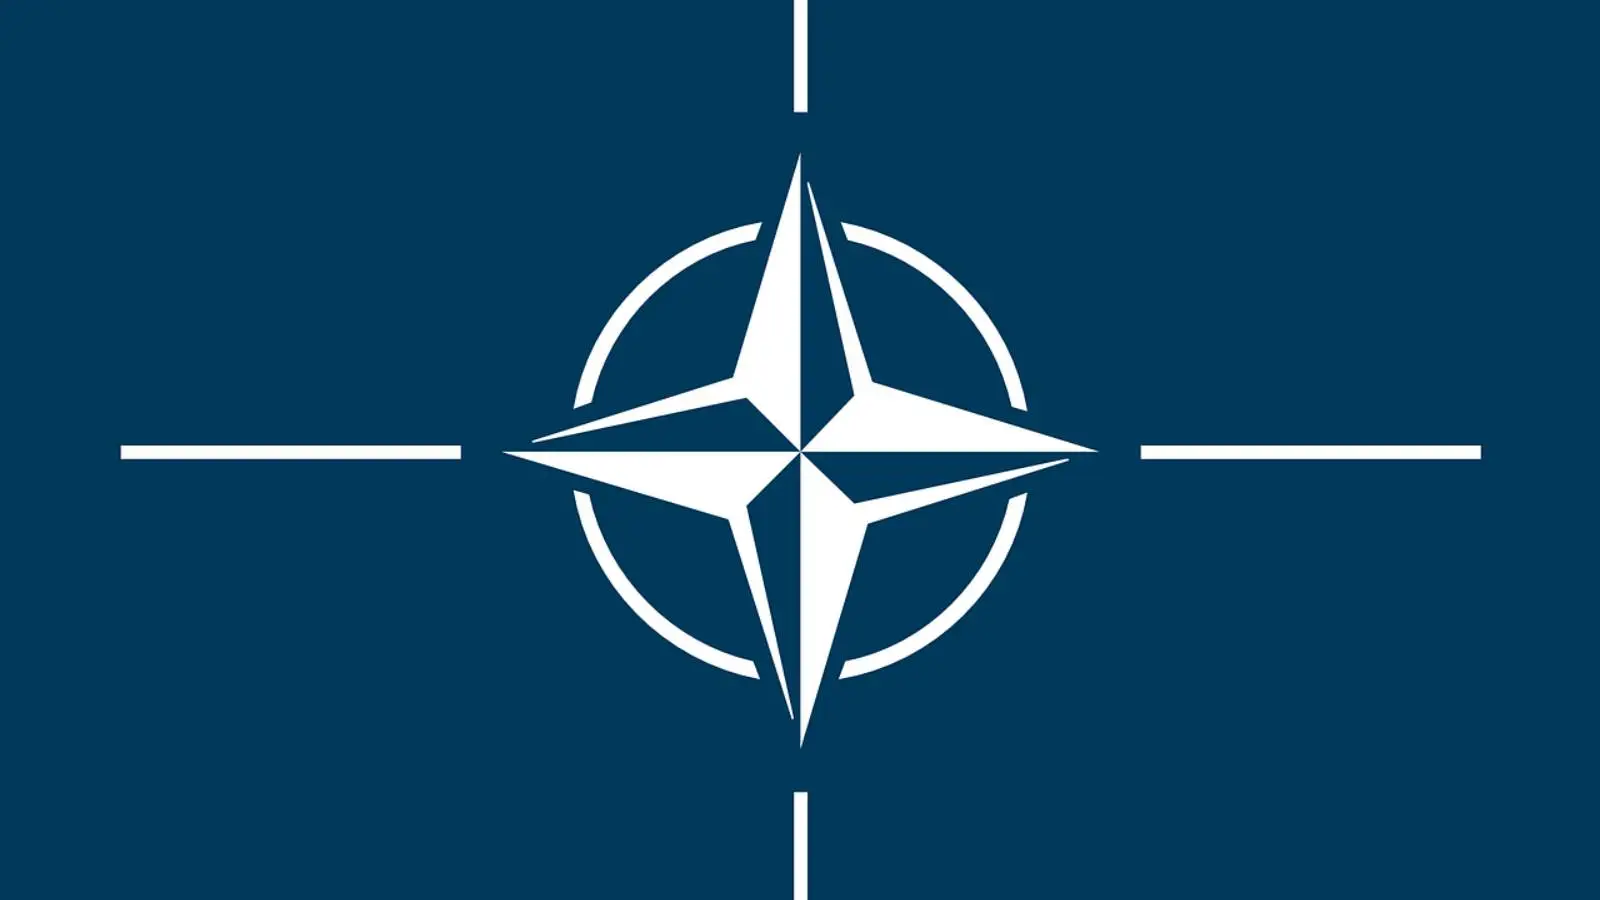 NATO esittelee Romanian armeijan erikoisjoukot (VIDEO)